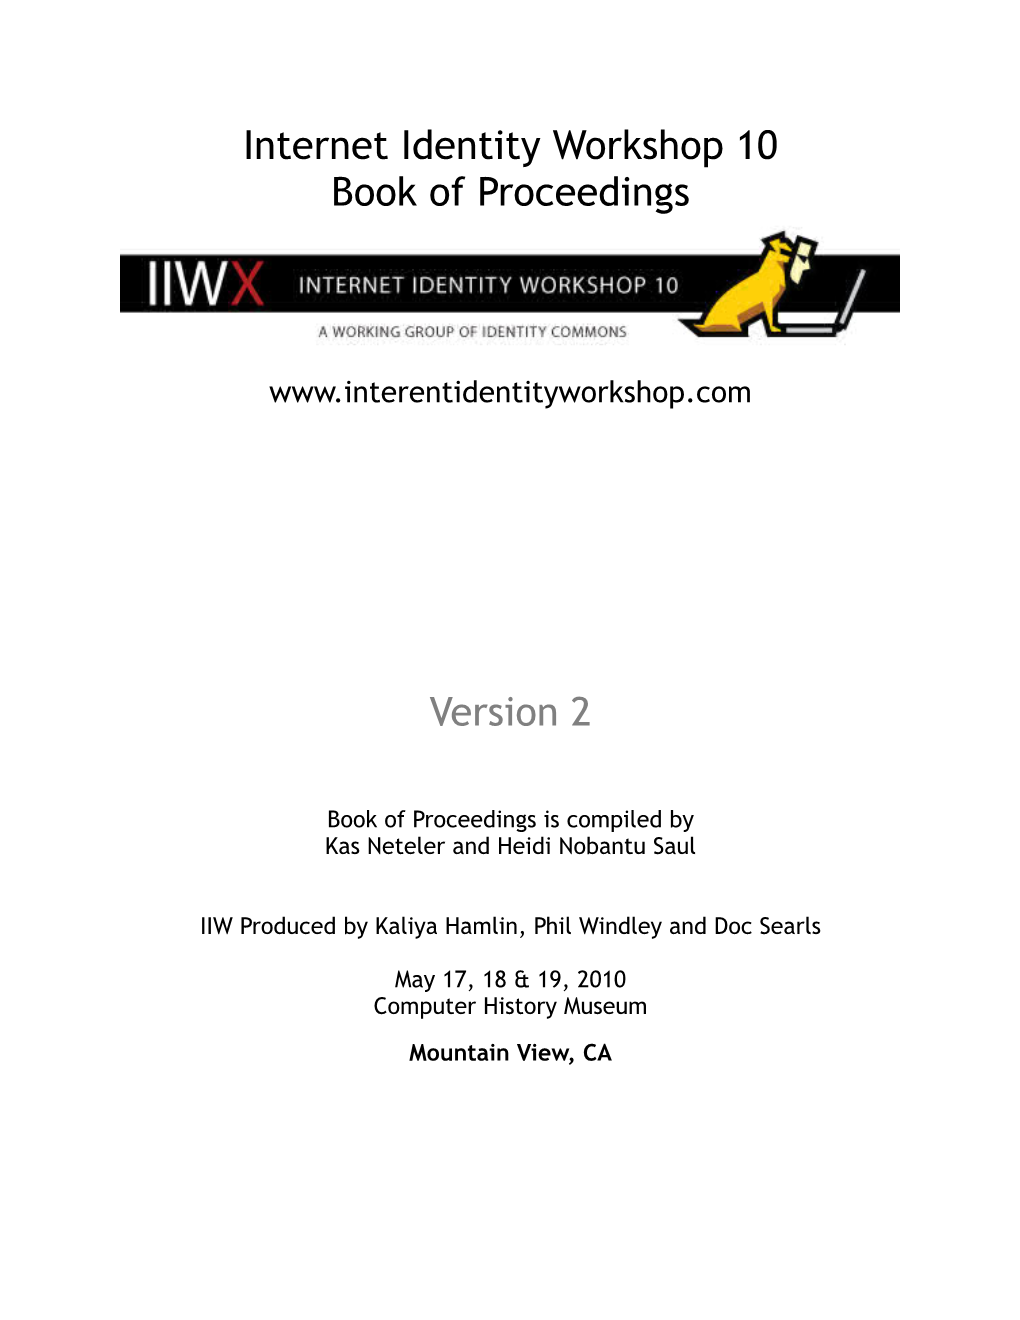 IIWX Book of Proceedings